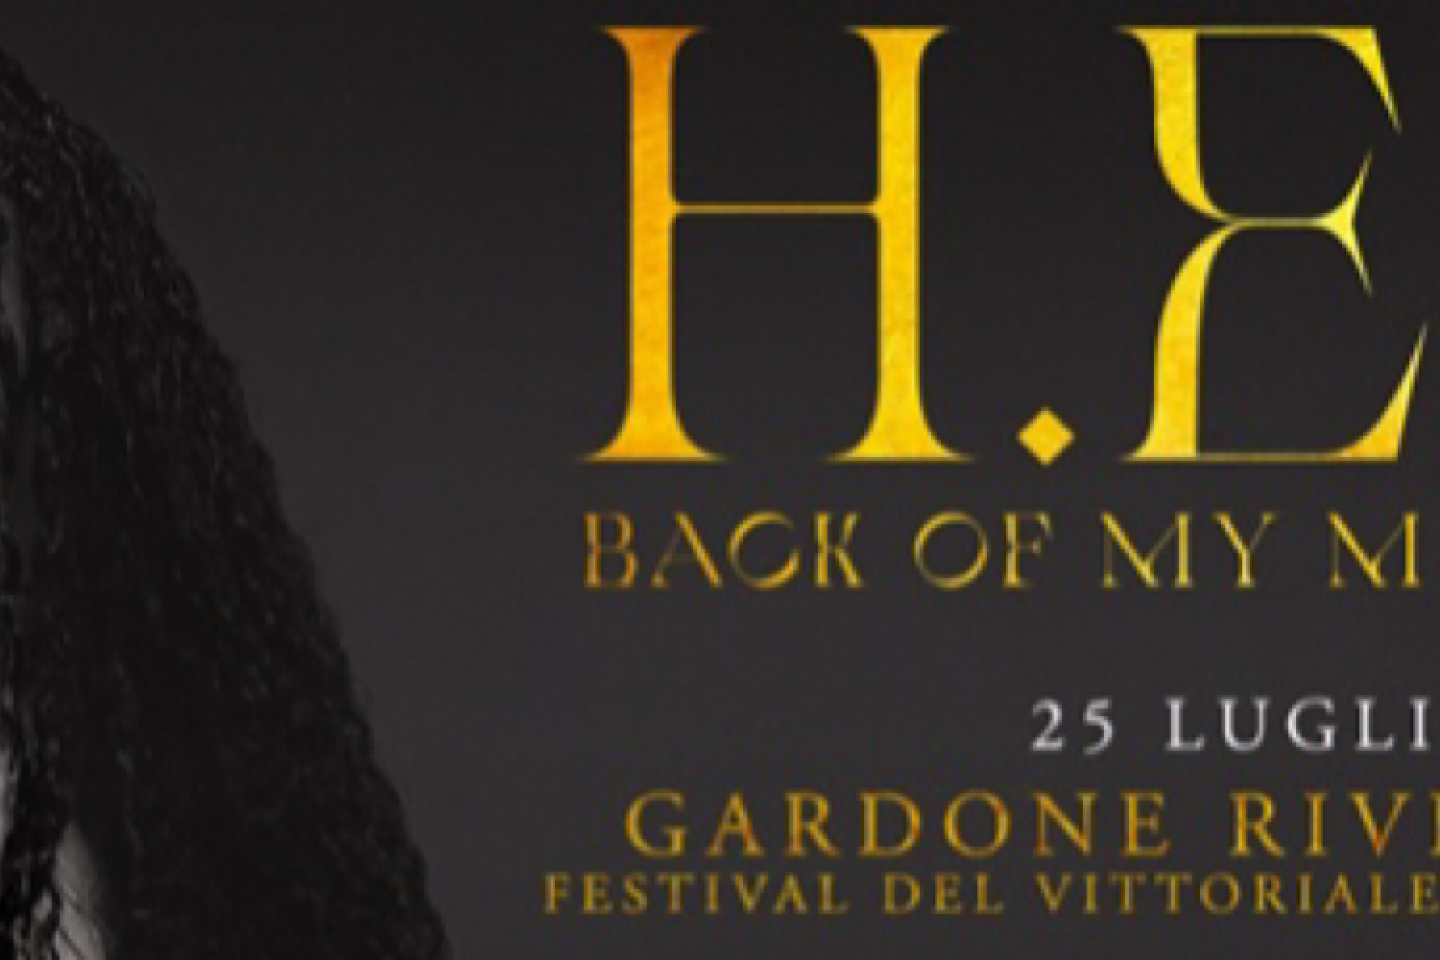 H.E.R. ARRIVA IN ITALIA PER L’UNICA DATA DEL BACK OF MY MIND TOUR IL 25 LUGLIO 2022 ALL’ANFITEATRO DEL VITTORIALE DI GARDONE RIVIERA (BS)